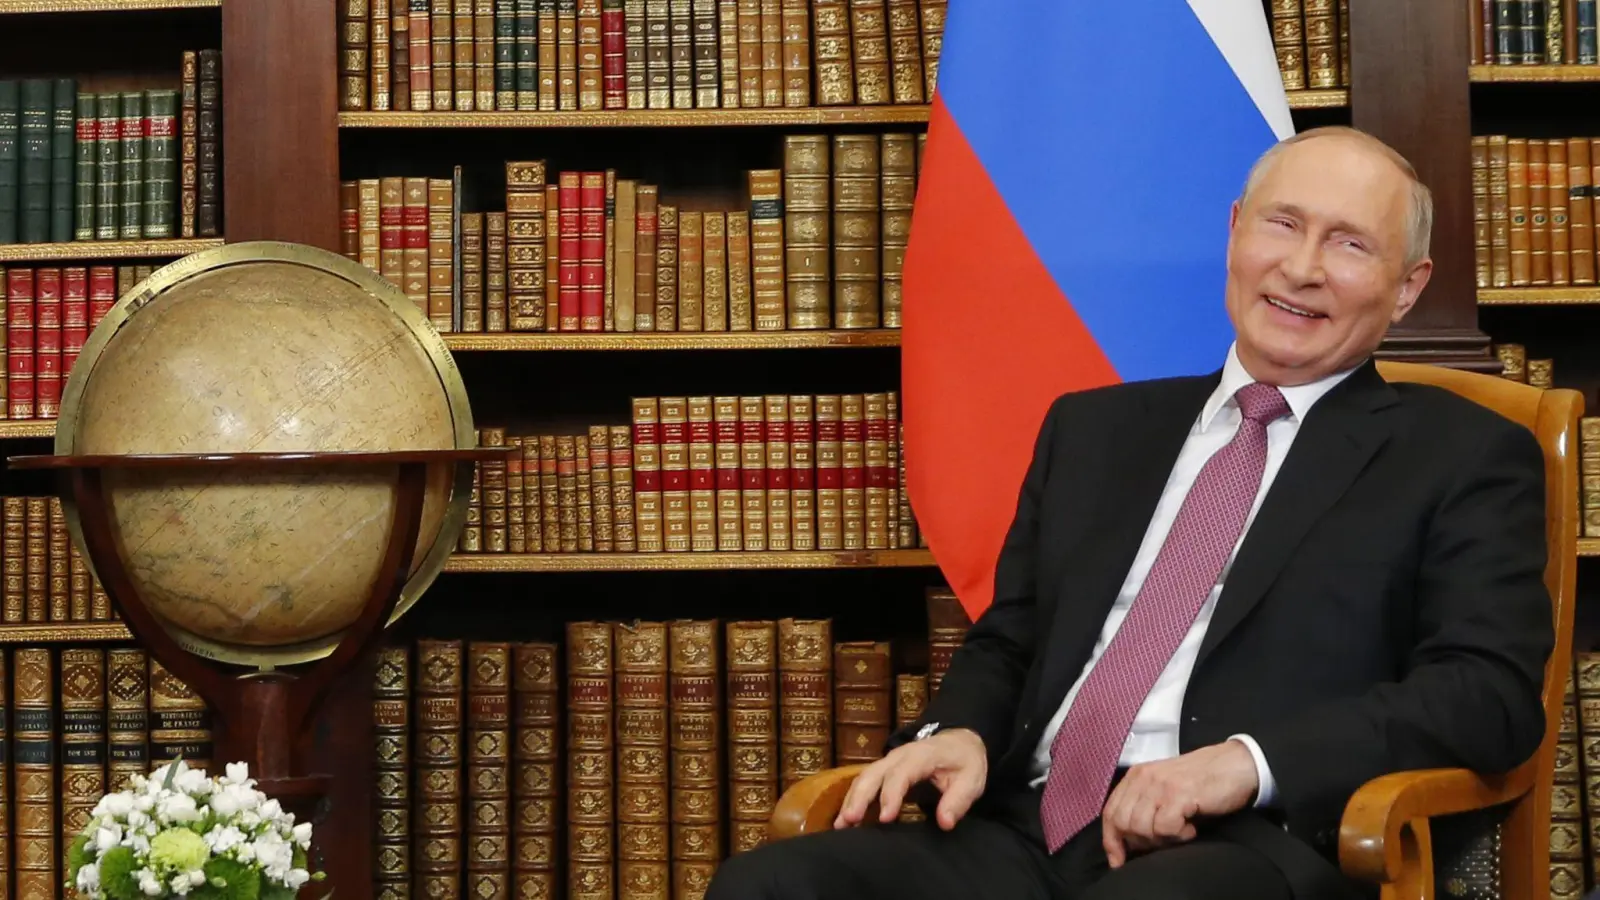 Der russische Präsident Wladimir Putin zeig sich amüsiert (Archivbild). (Foto: Denis Balibouse/REUTERS/dpa)